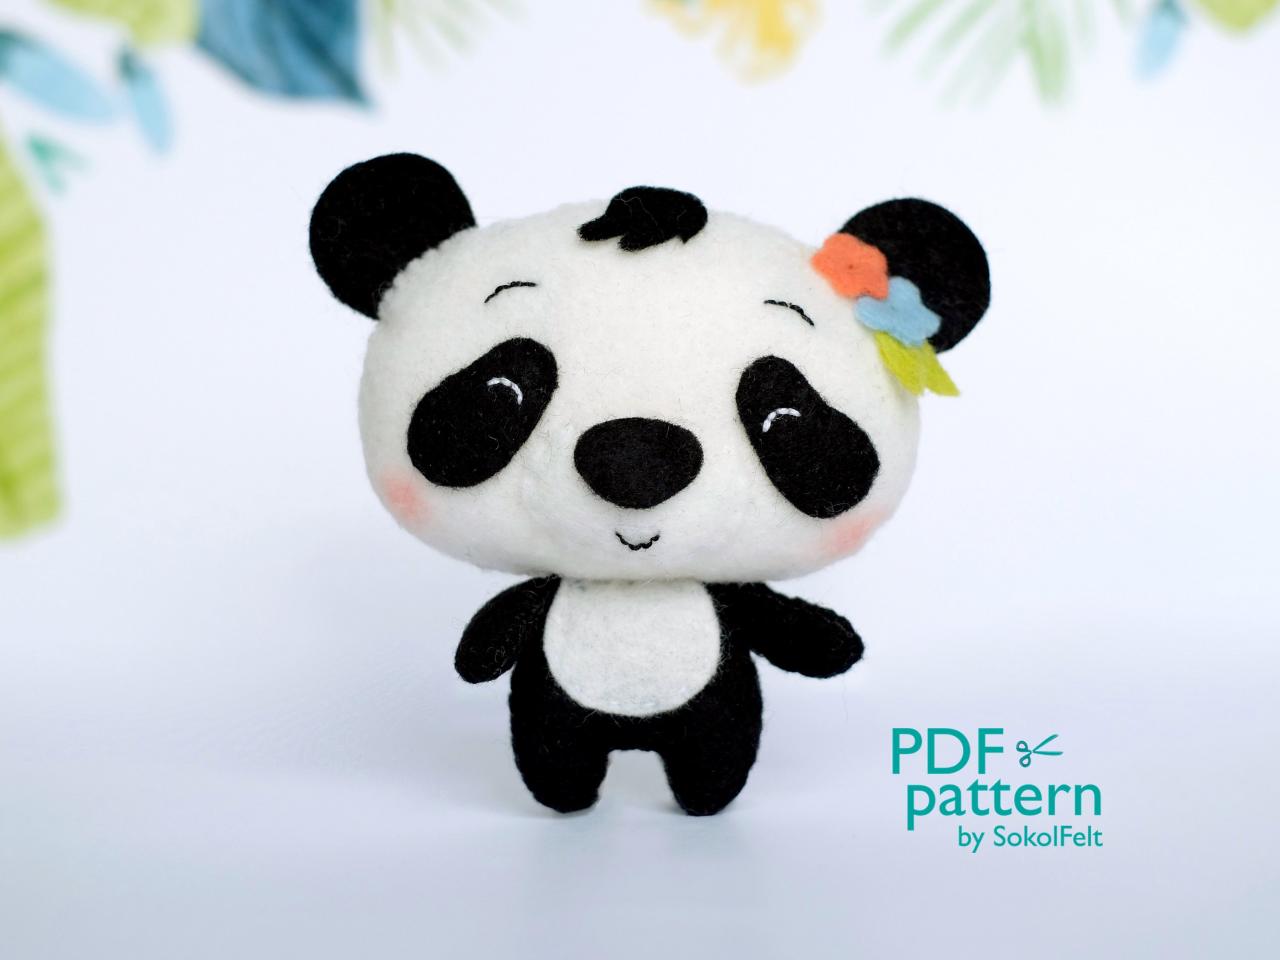 Panda Pdf Pattern, Felt Woodland Animal Plush Toy Sewing Tutorial, Baby Crib Mobile Toy